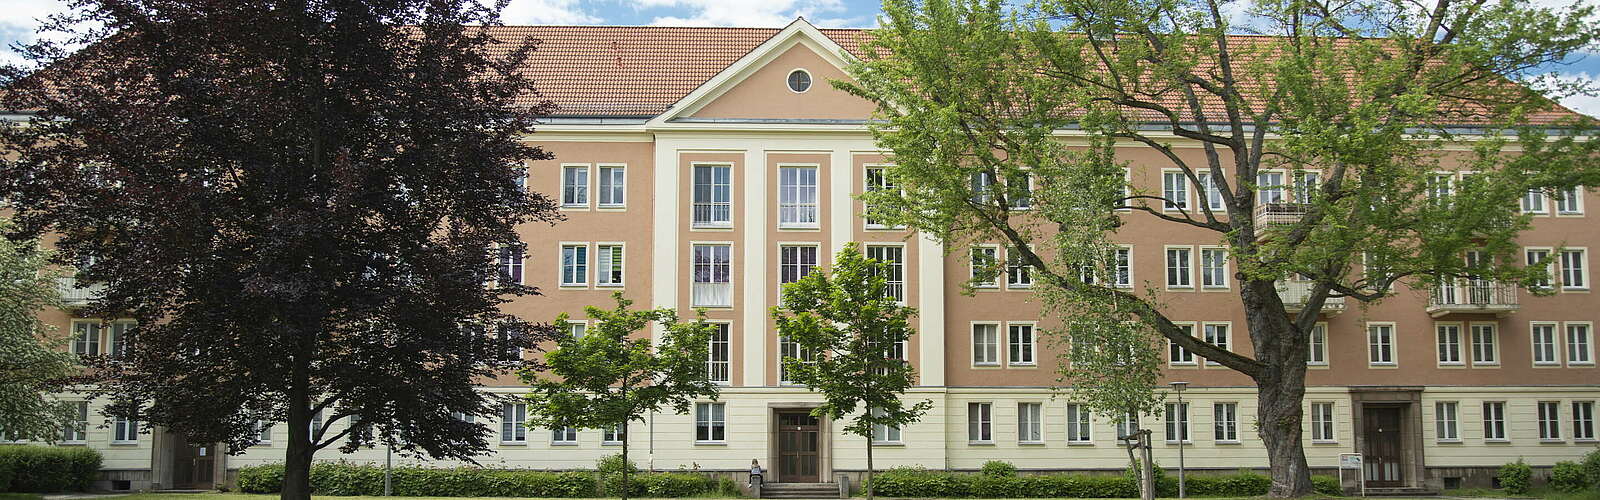 Sozialistischer Wohnkomplex in Eisenhüttenstadt,
        
    

        Foto: TMB-Fotoarchiv/Steffen Lehmann